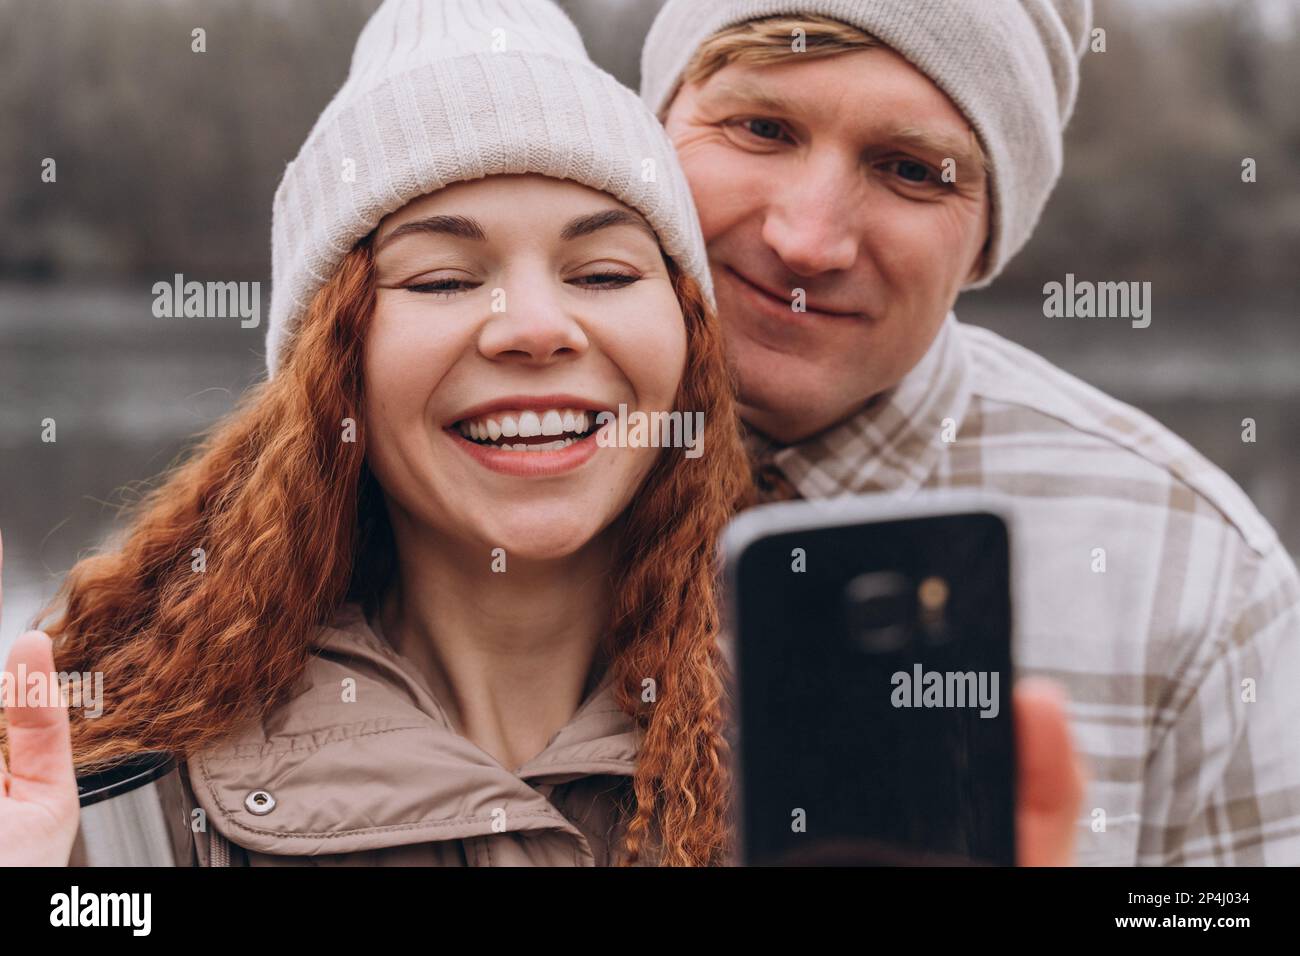 30-35 Paar, das beim Gehen Selfie oder Videoanruf macht Stockfoto